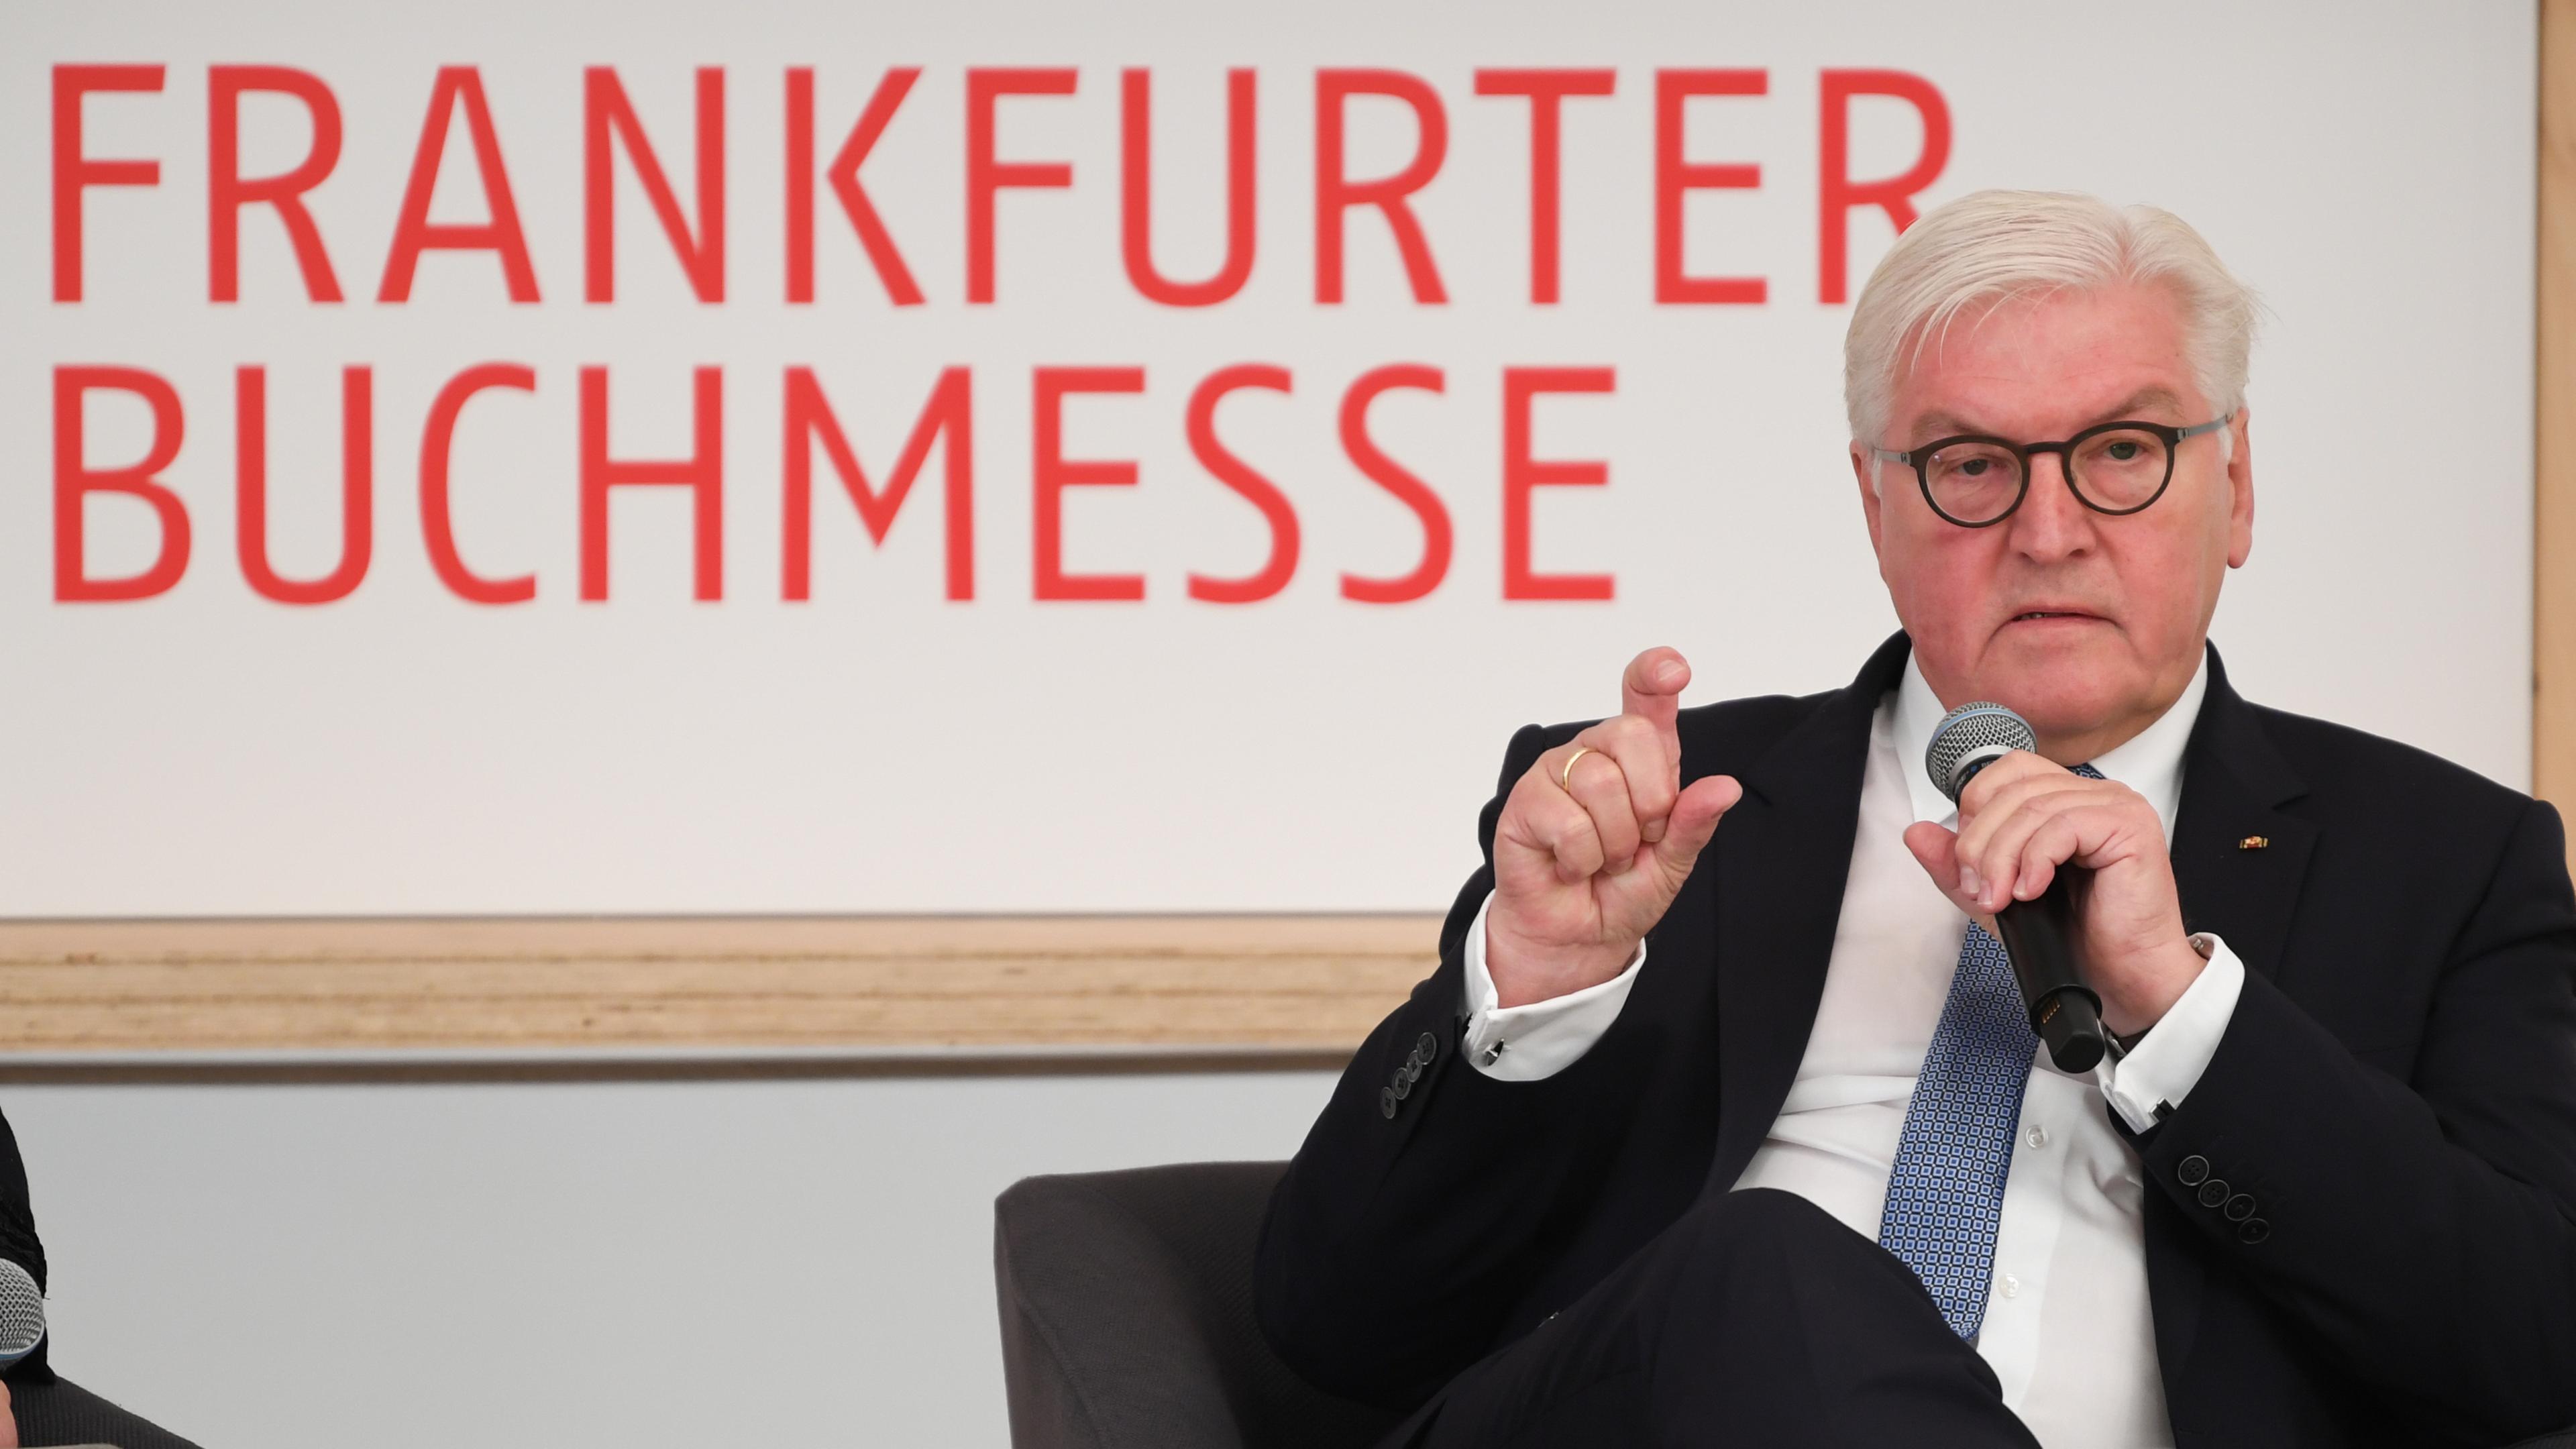 Bundespräsident Frank-Walter Steinmeier auf der Frankfurter Buchmesse am 10.10.2018 in Frankfurt.